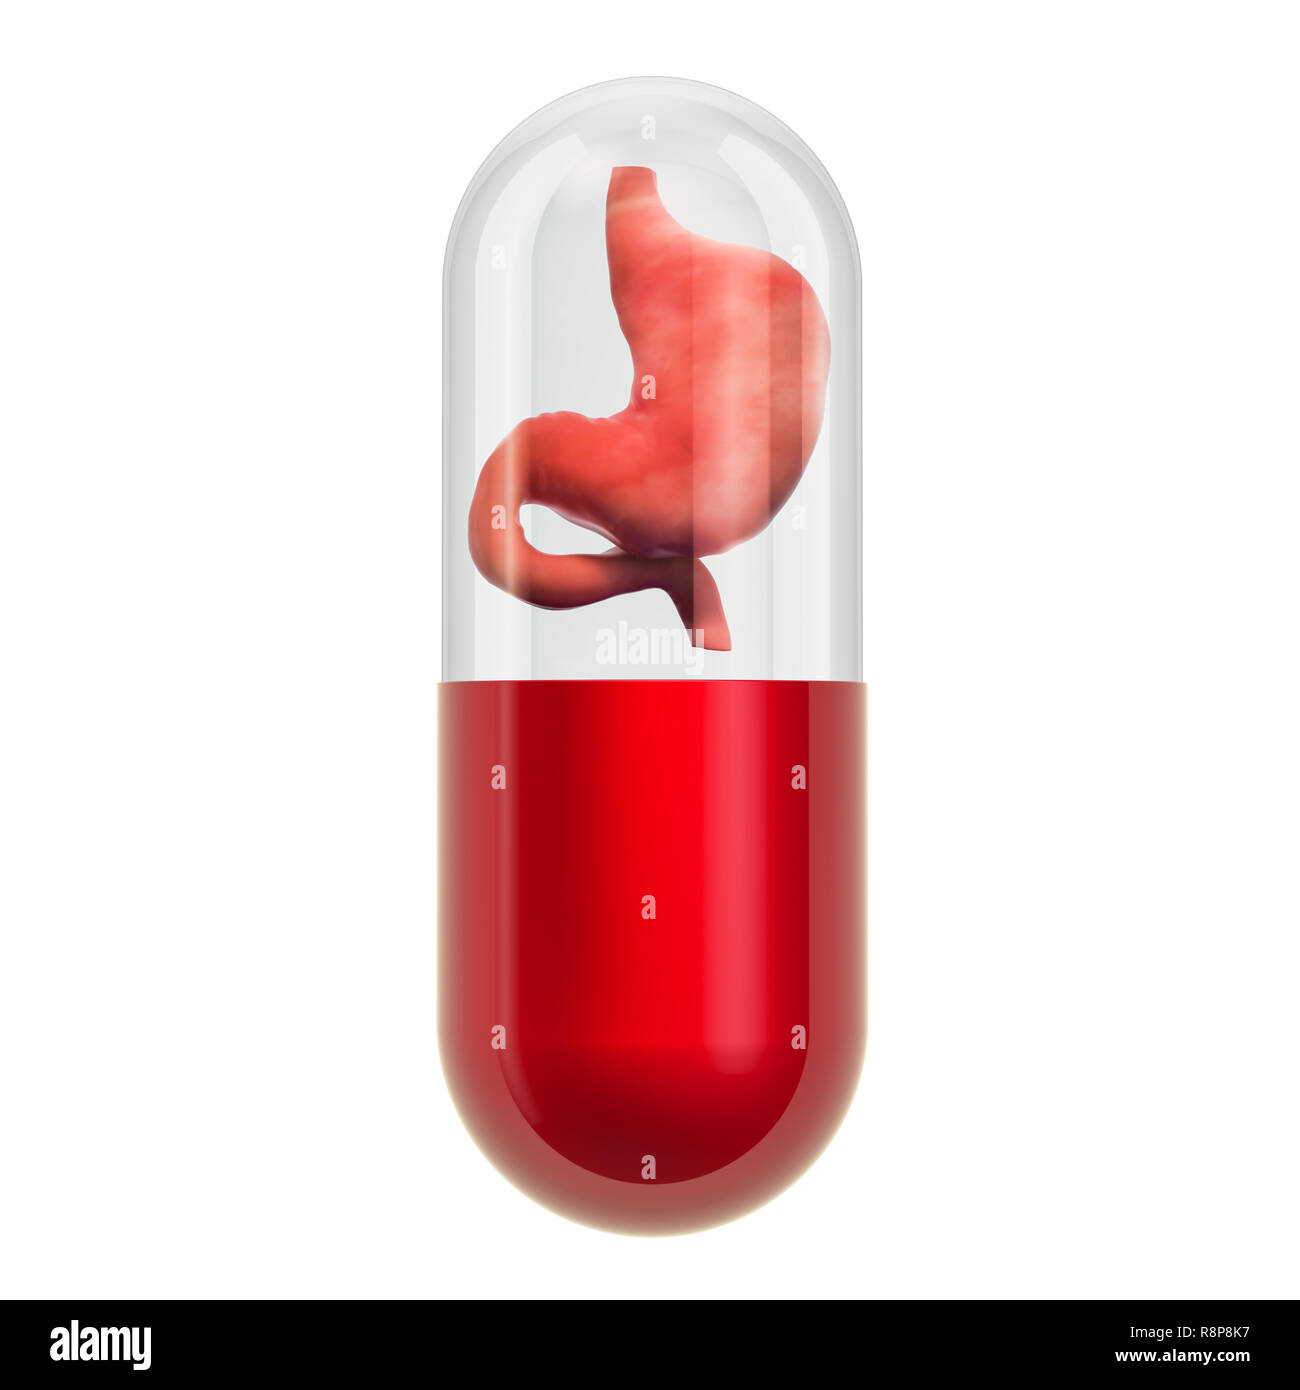 Tratamientos y medicamentos para enfermedades estomacales concepto, 3D rendering aislado sobre fondo blanco. Foto de stock